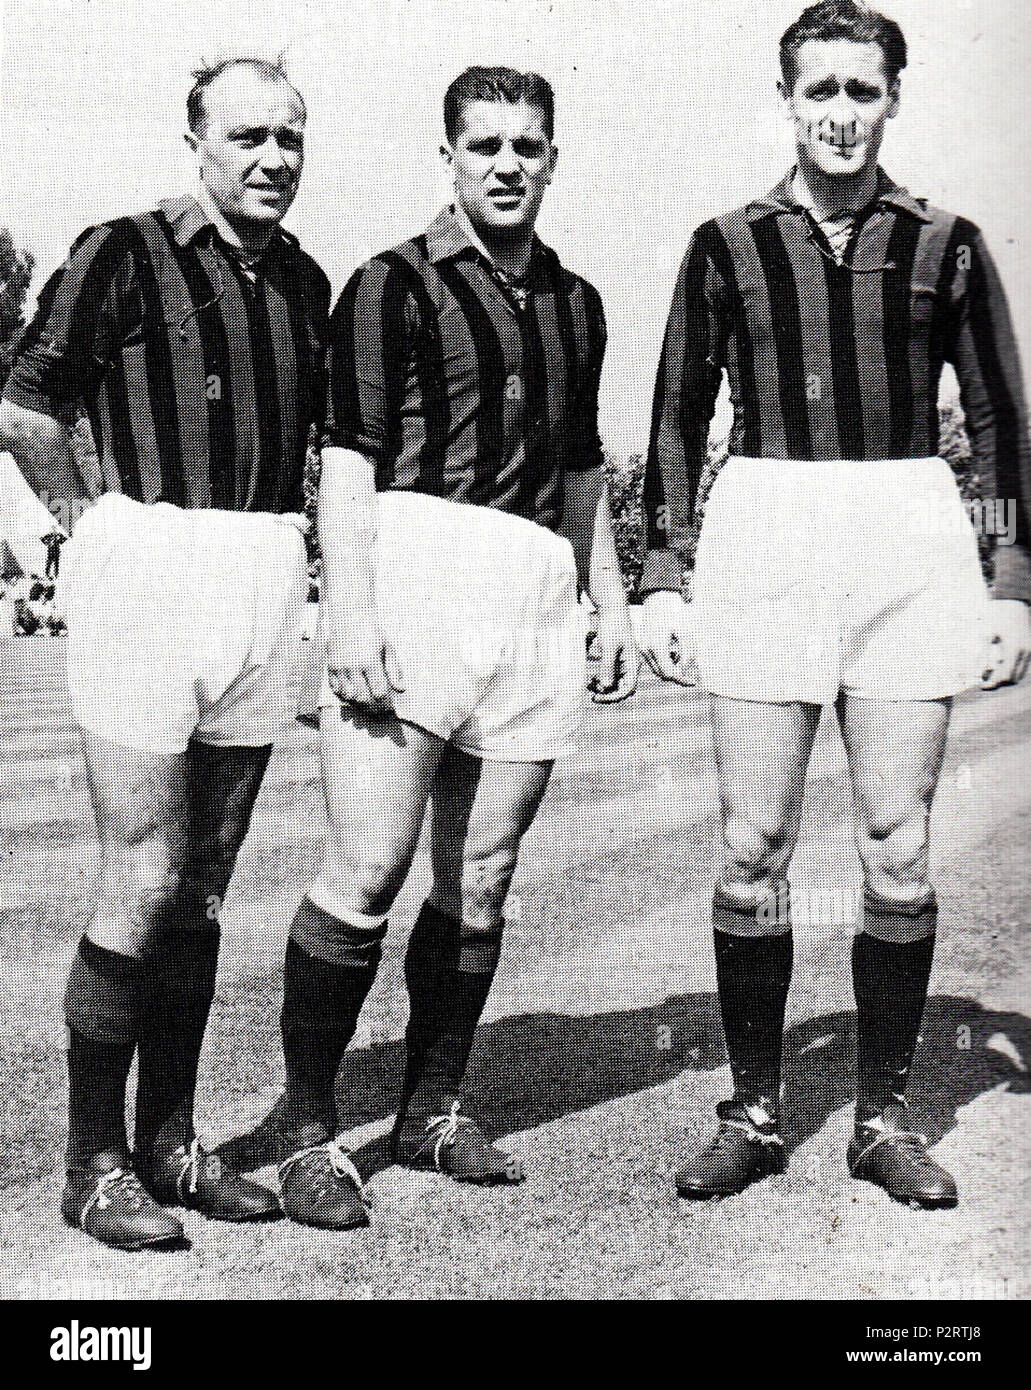 . Italiano : I calciatori svedesi Gunnar Gren (a sinistra), Gunnar Nordahl (al centro) e Nils Liedholm (a destra), il trio d'attacco 'Gre-No-li' nei primi anni del Milan 50 del XX secolo. Entre 1949 et 1953. Inconnu 1 1950 AC Milan's trio suédois de Gre-No-Li (Gren, Nordahl et Liedholm) Banque D'Images